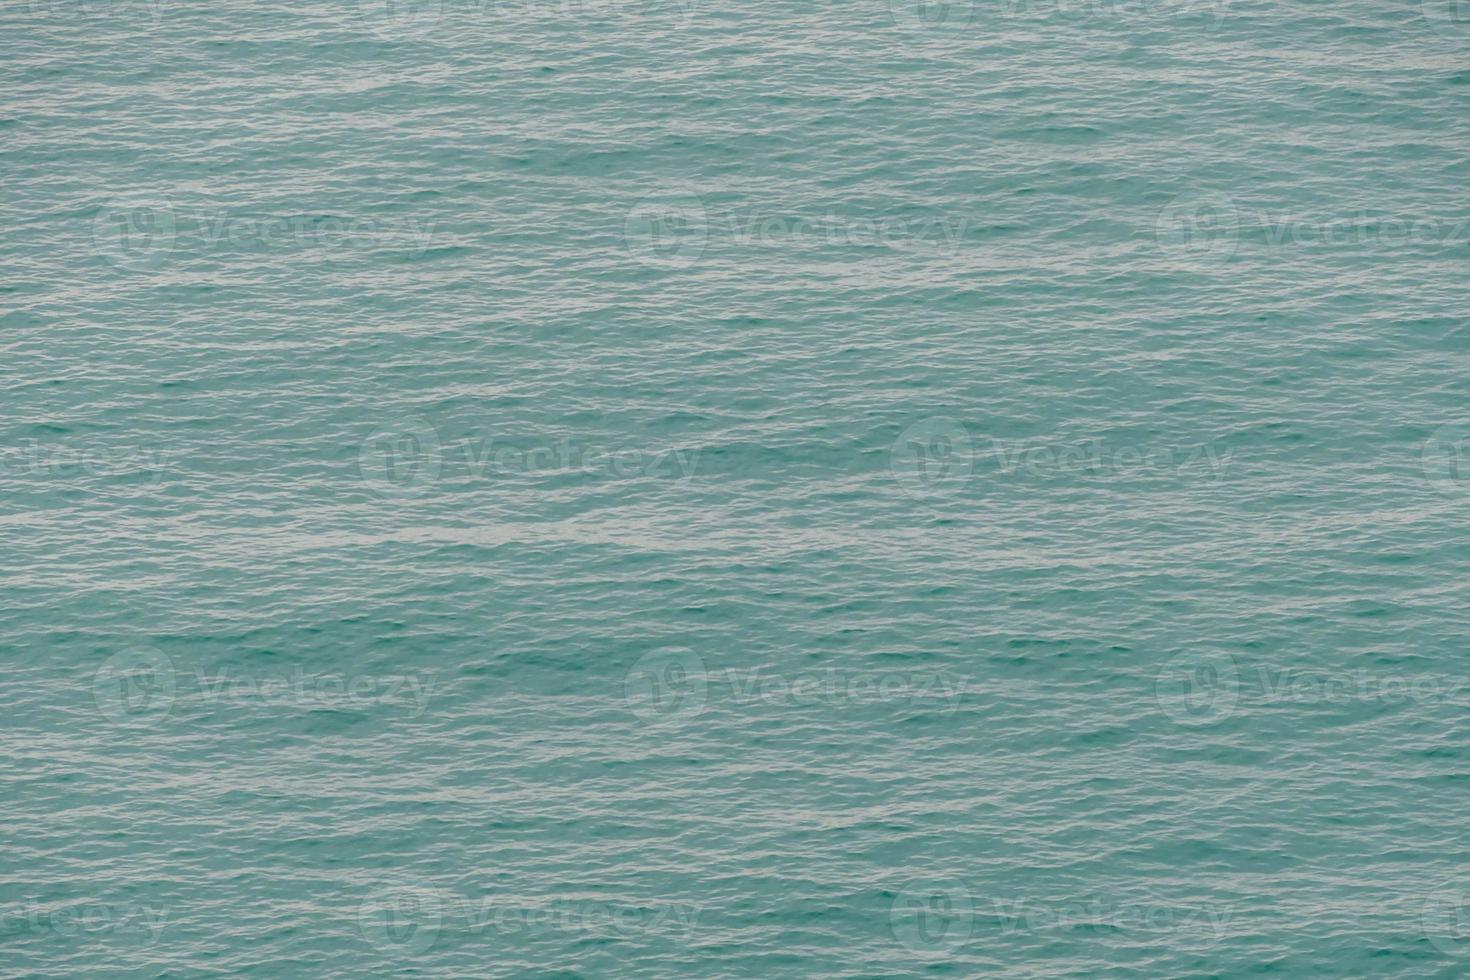 olas en el agua foto